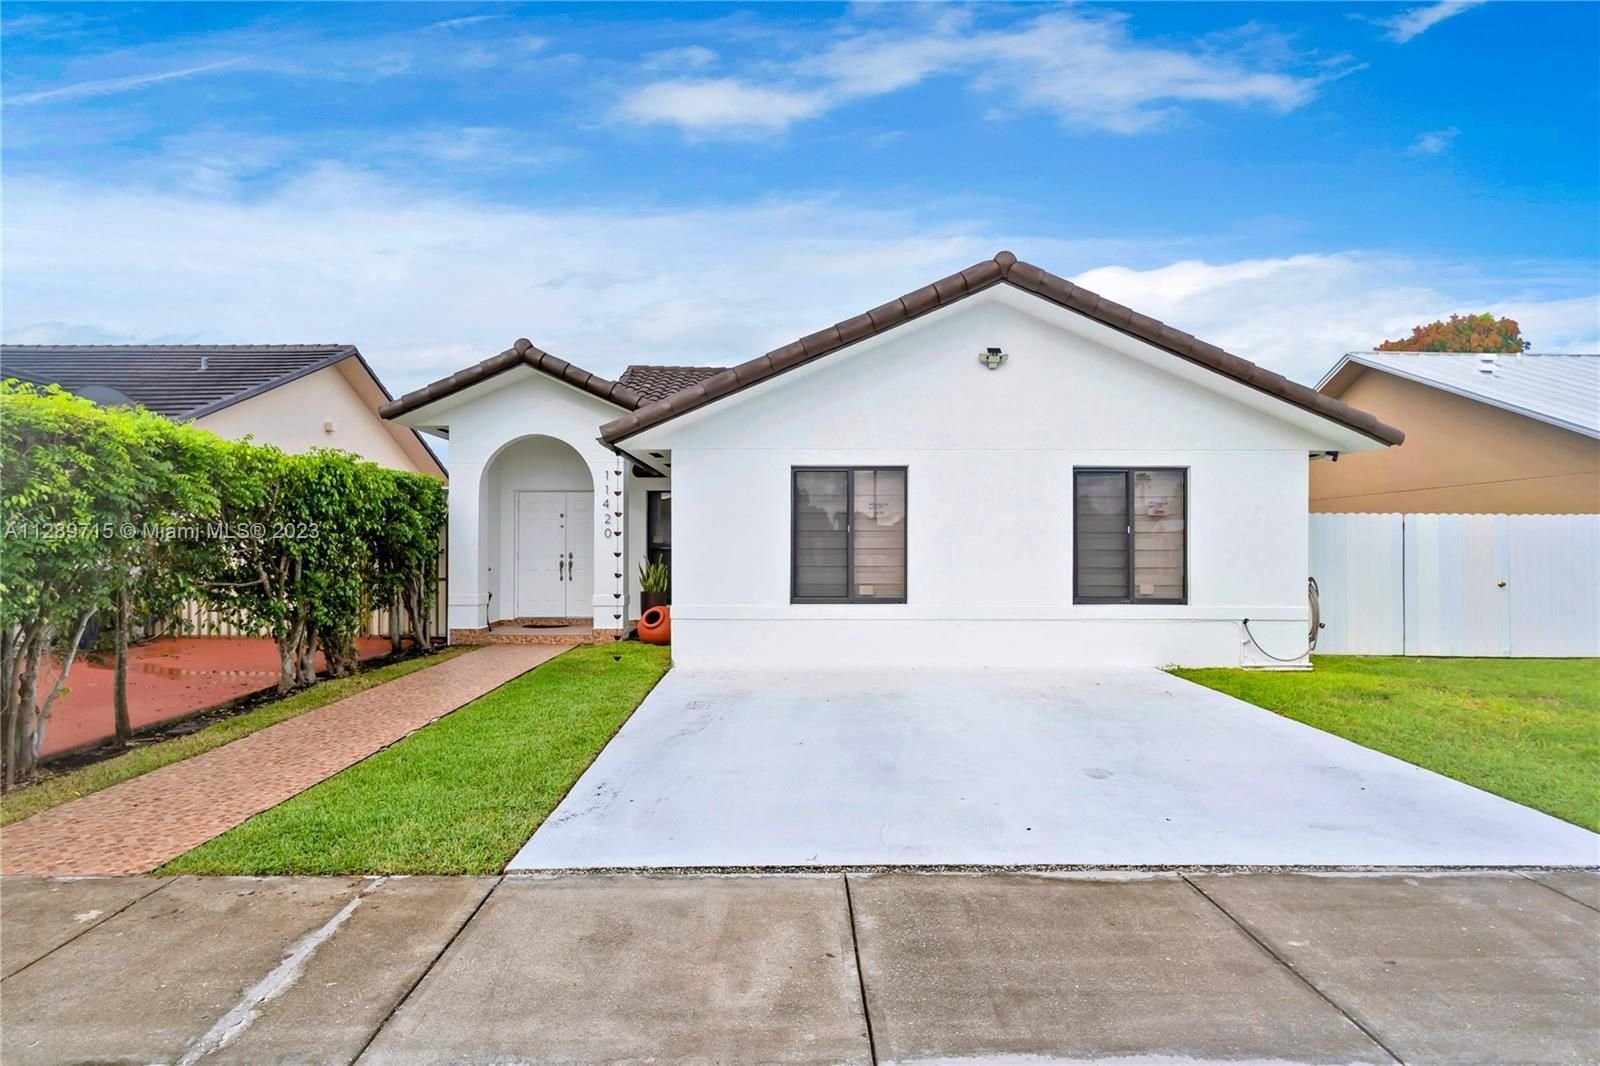 Real estate property located at 11420 144th Path, Miami-Dade County, Miami, FL